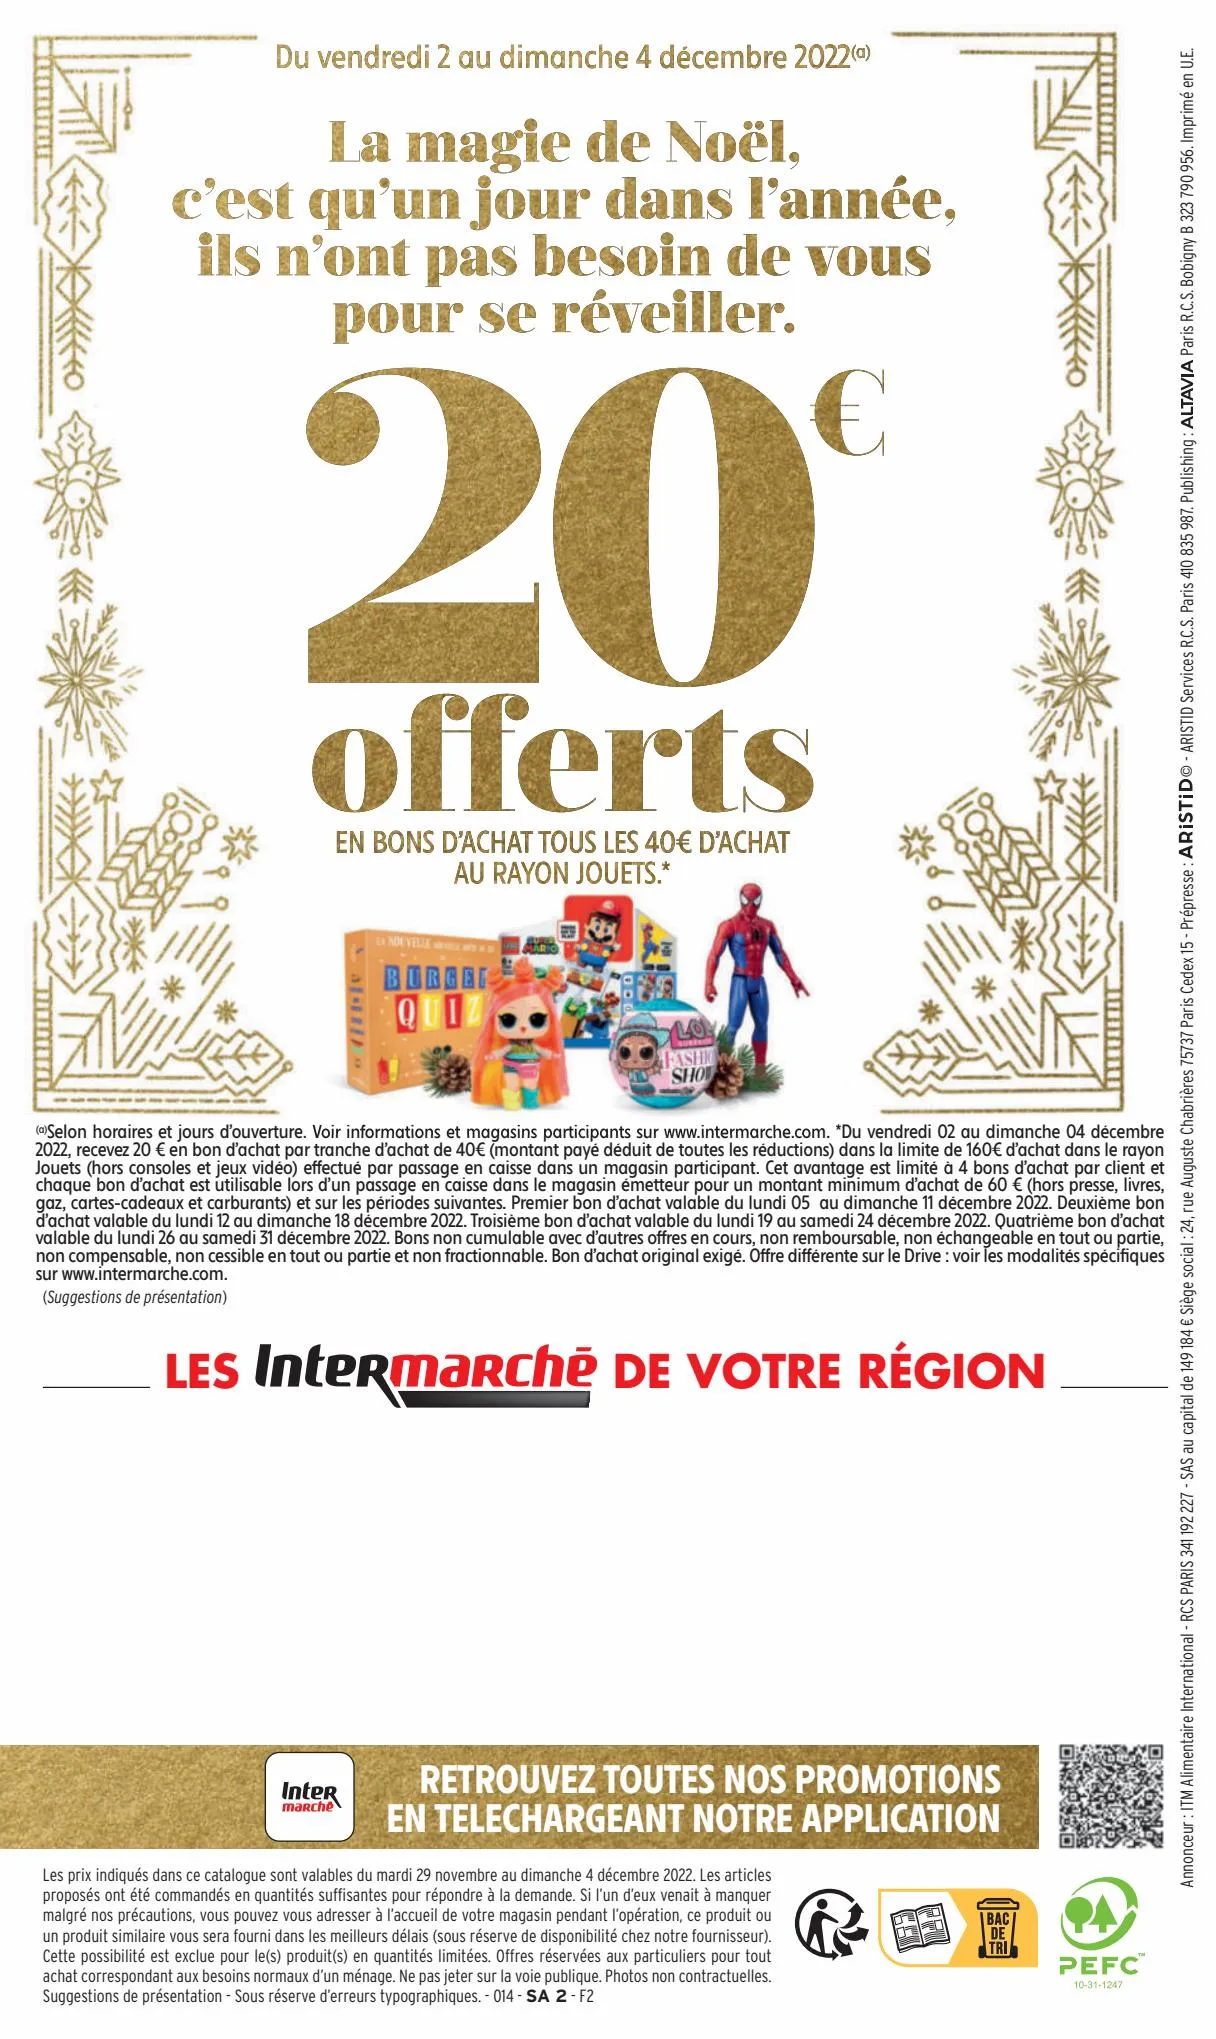 Catalogue 130€ offerts en bons d'achat, page 00048